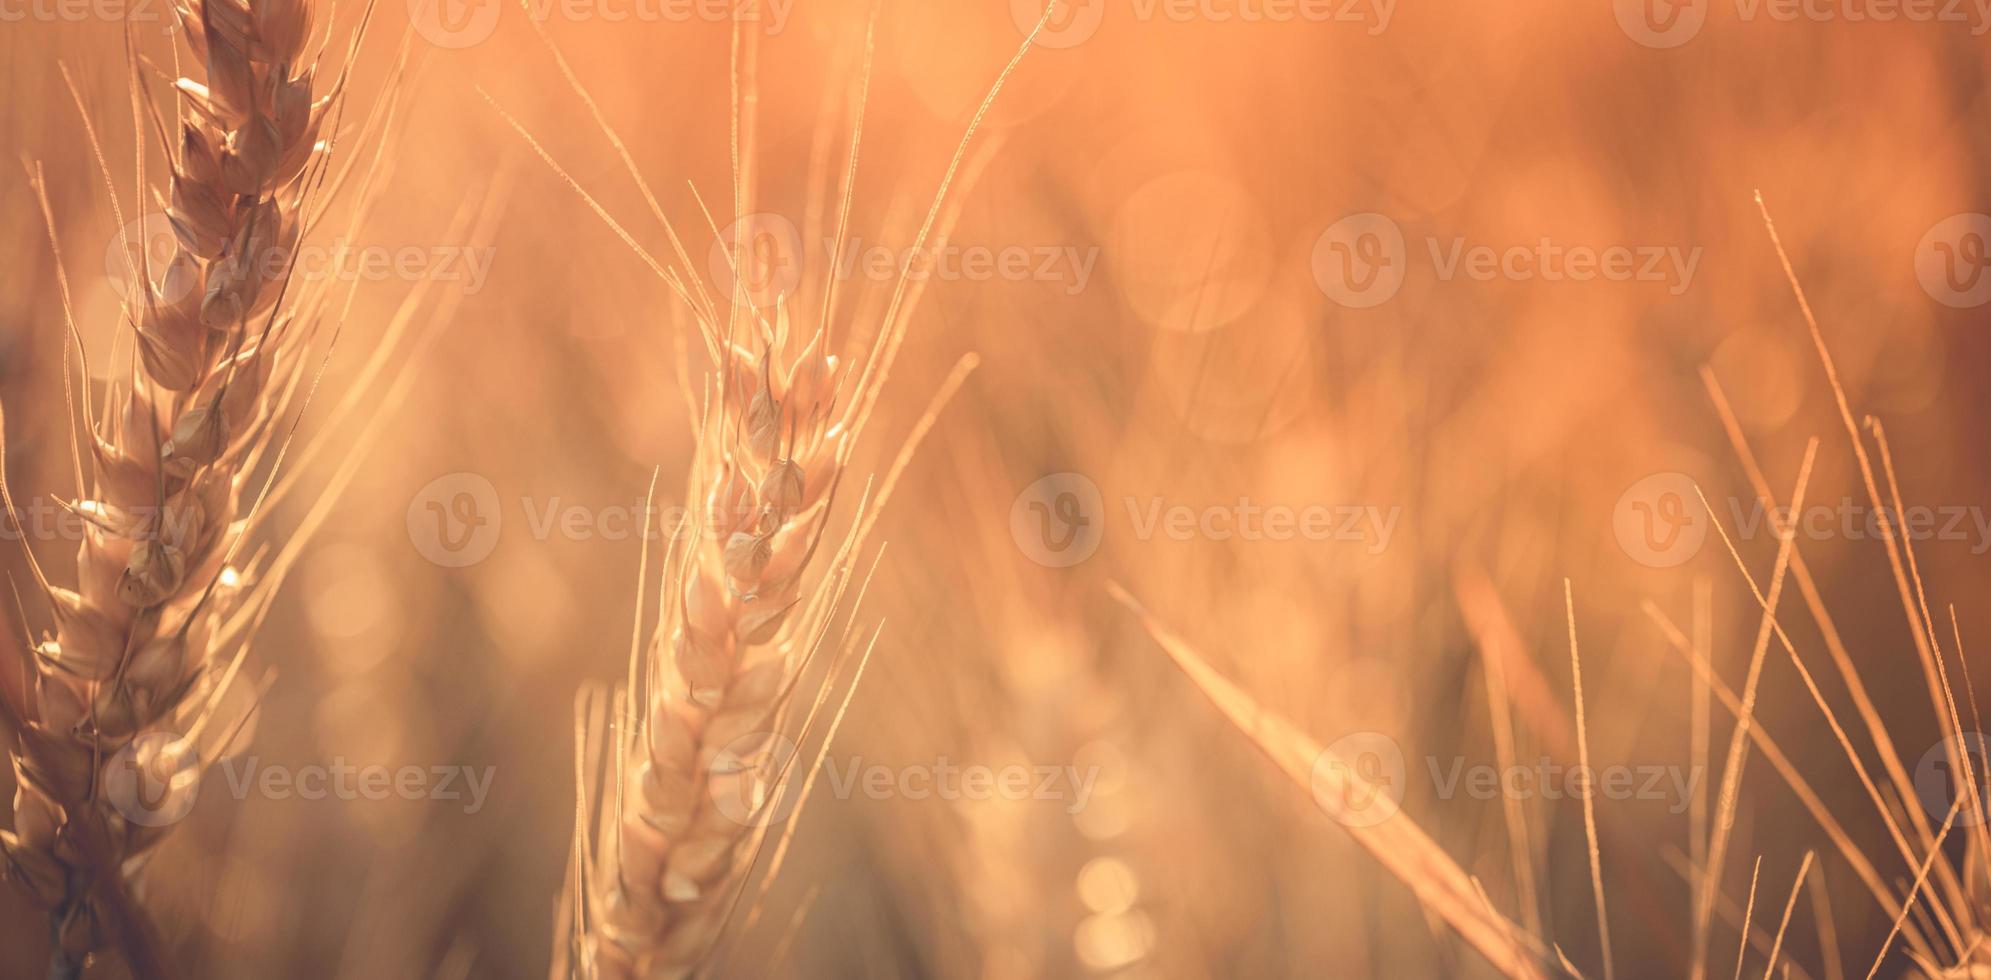 coucher de soleil sur le champ de blé. épis de blé doré agrandi. paysage rural sous un soleil éclatant. gros plan de blé doré mûr, concept de temps de récolte dorée floue. agriculture nature, rayons de soleil agriculture lumineuse photo